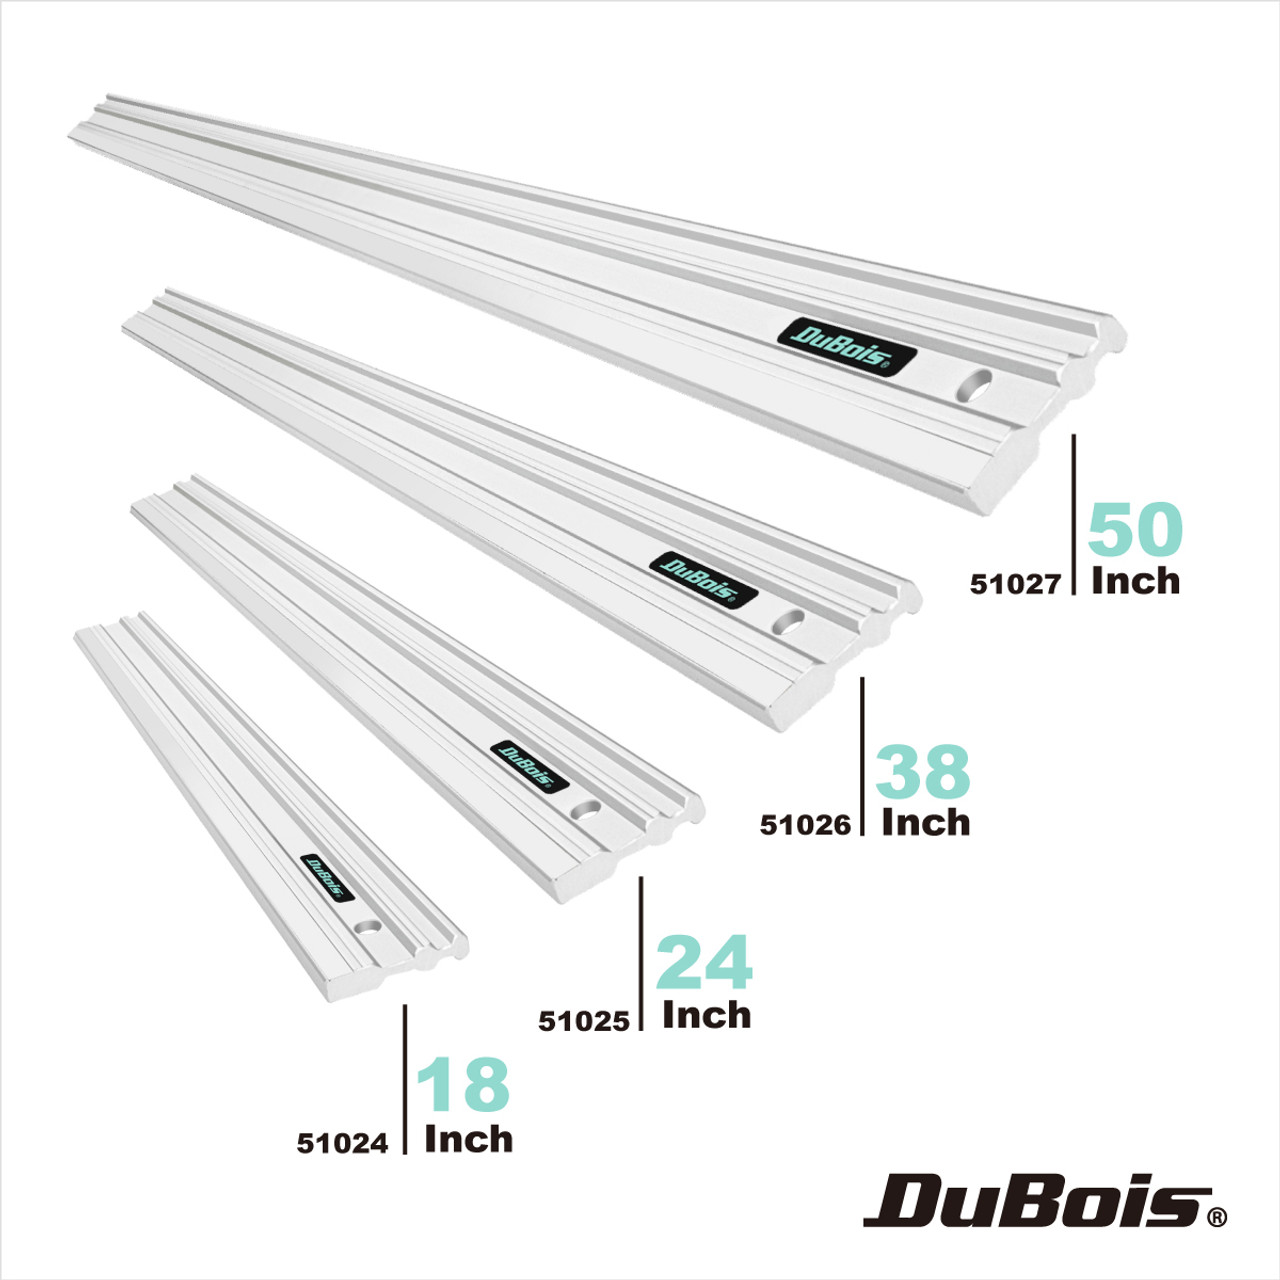 Dubois 51026 Aluminum Straight Edge 38-Inch 0003' Over Full 38' Length